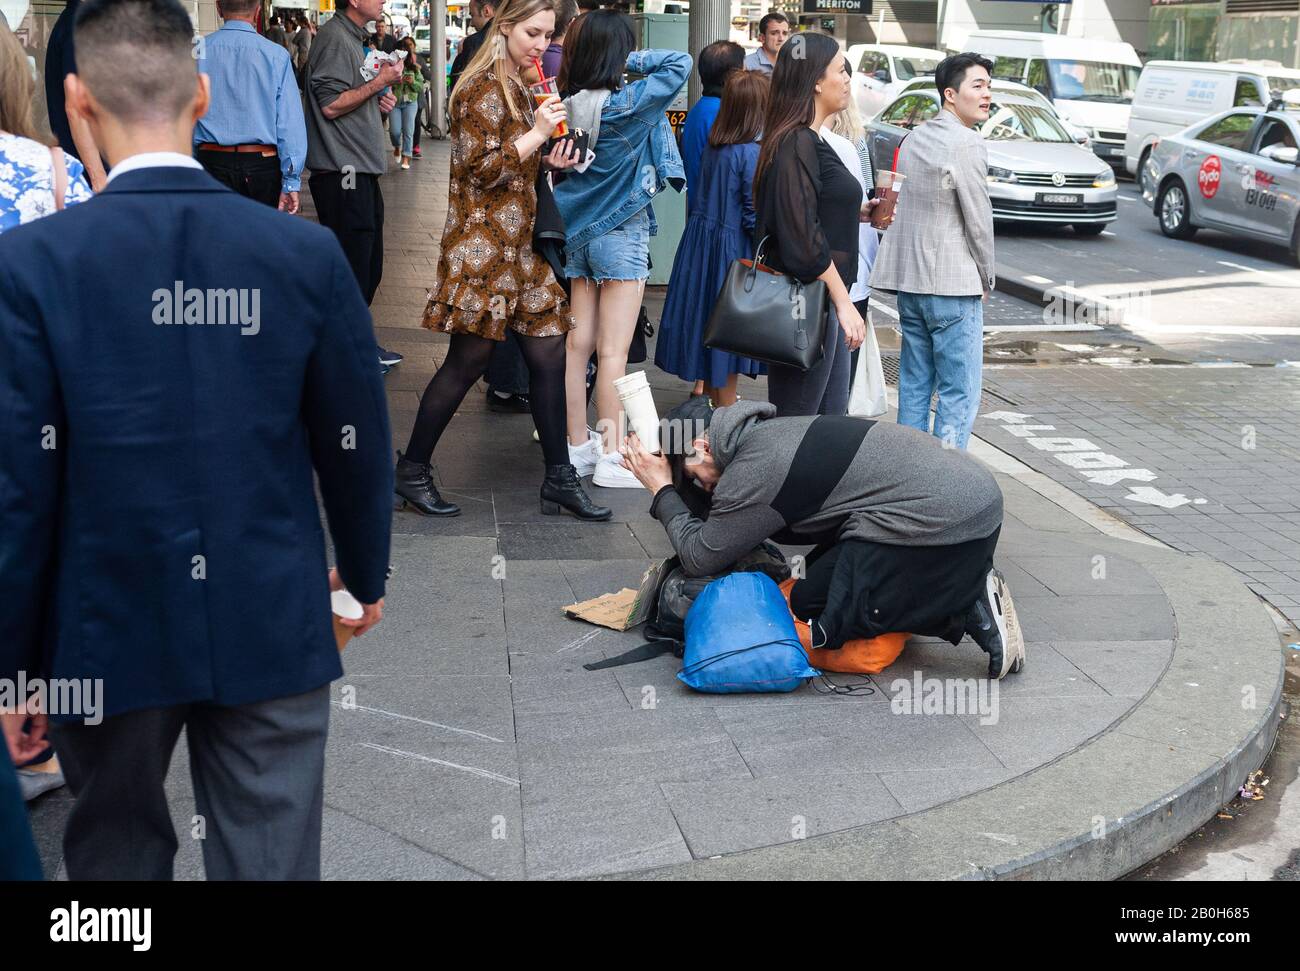 27.09.2019, Sydney, New South Wales, Australien - Fußgänger gehen im Geschäftszentrum der Millionen-Metropole an einem bettelnden Obdachlosen vorbei. 0SL190 Stockfoto